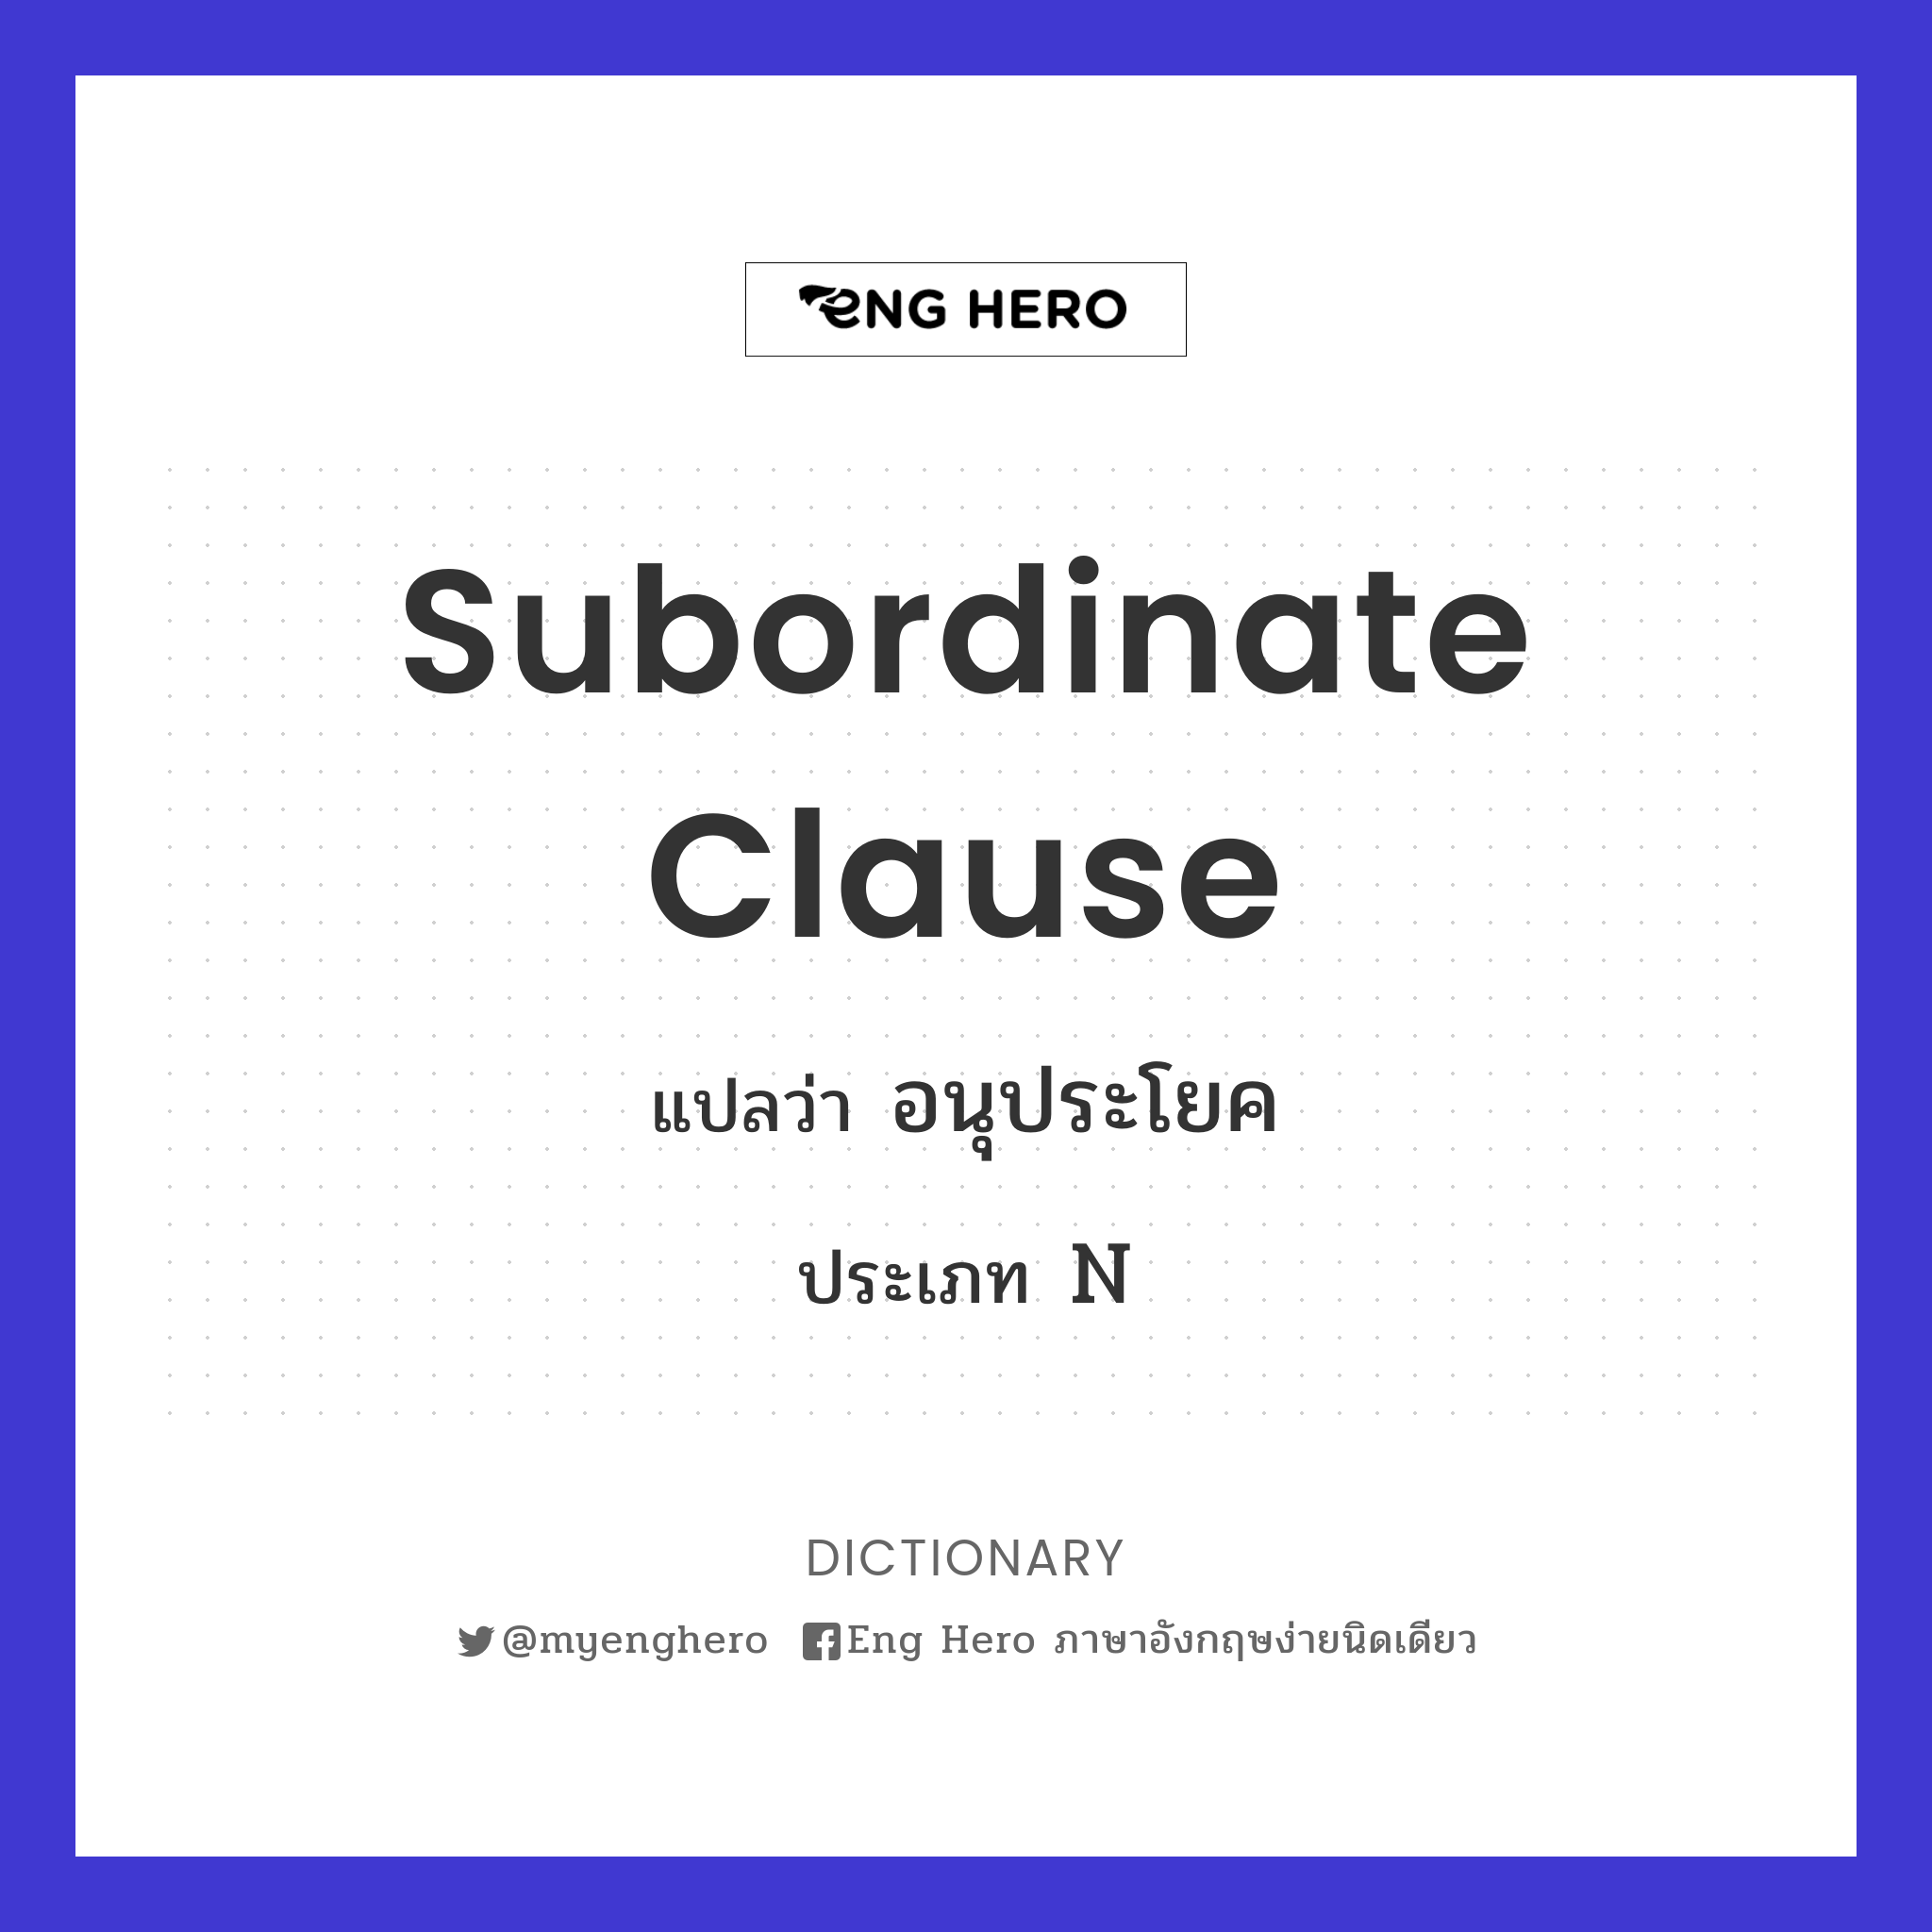 subordinate clause